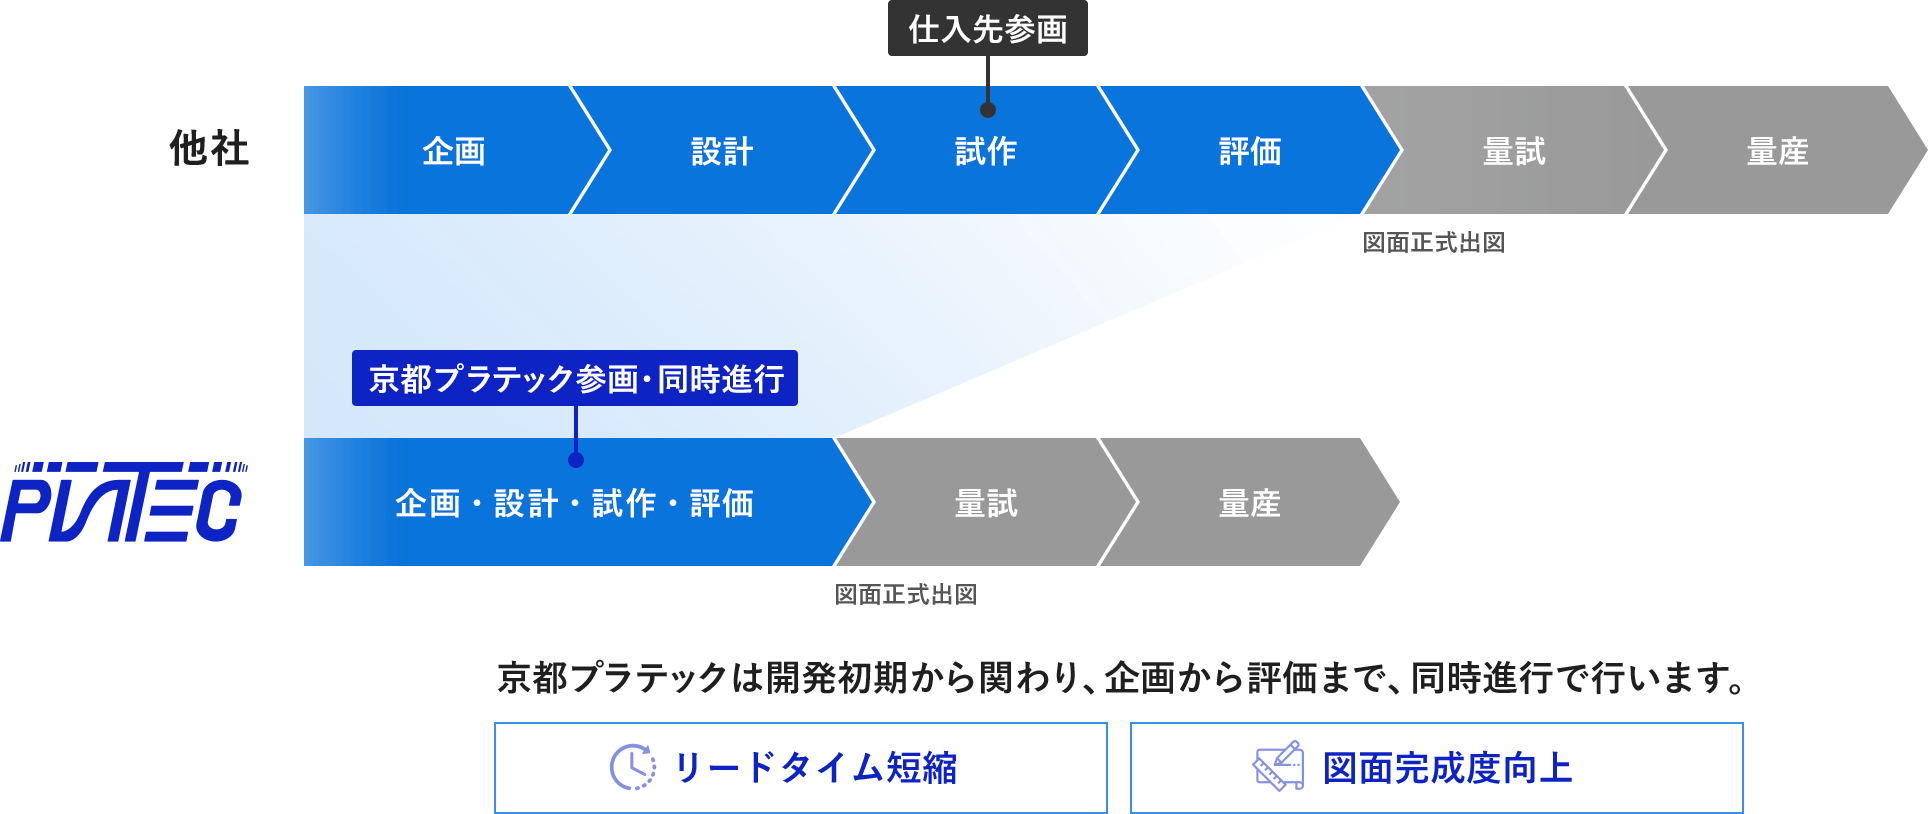 京都プラテックは開発初期から関わり、企画から評価まで、同時進行で行います。